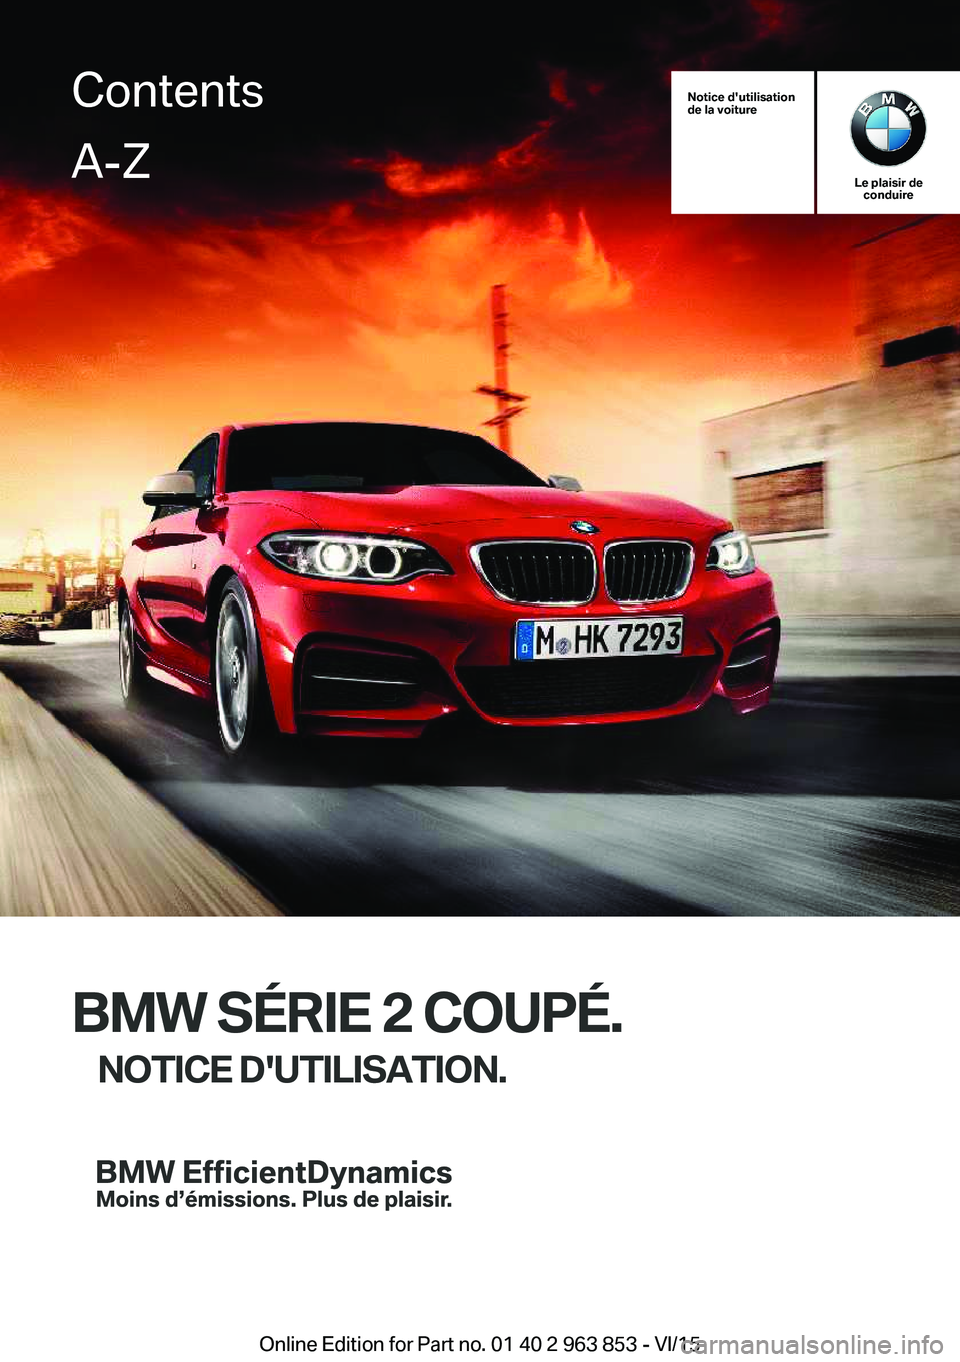 BMW 2 SERIES COUPE 2016  Notices Demploi (in French) Notice d'utilisation
de la voiture
Le plaisir de conduire
BMW SÉRIE 2 COUPÉ.
NOTICE D'UTILISATION.
ContentsA-Z
Online Edition for Part no. 01 40 2 963 853 - VI/15   